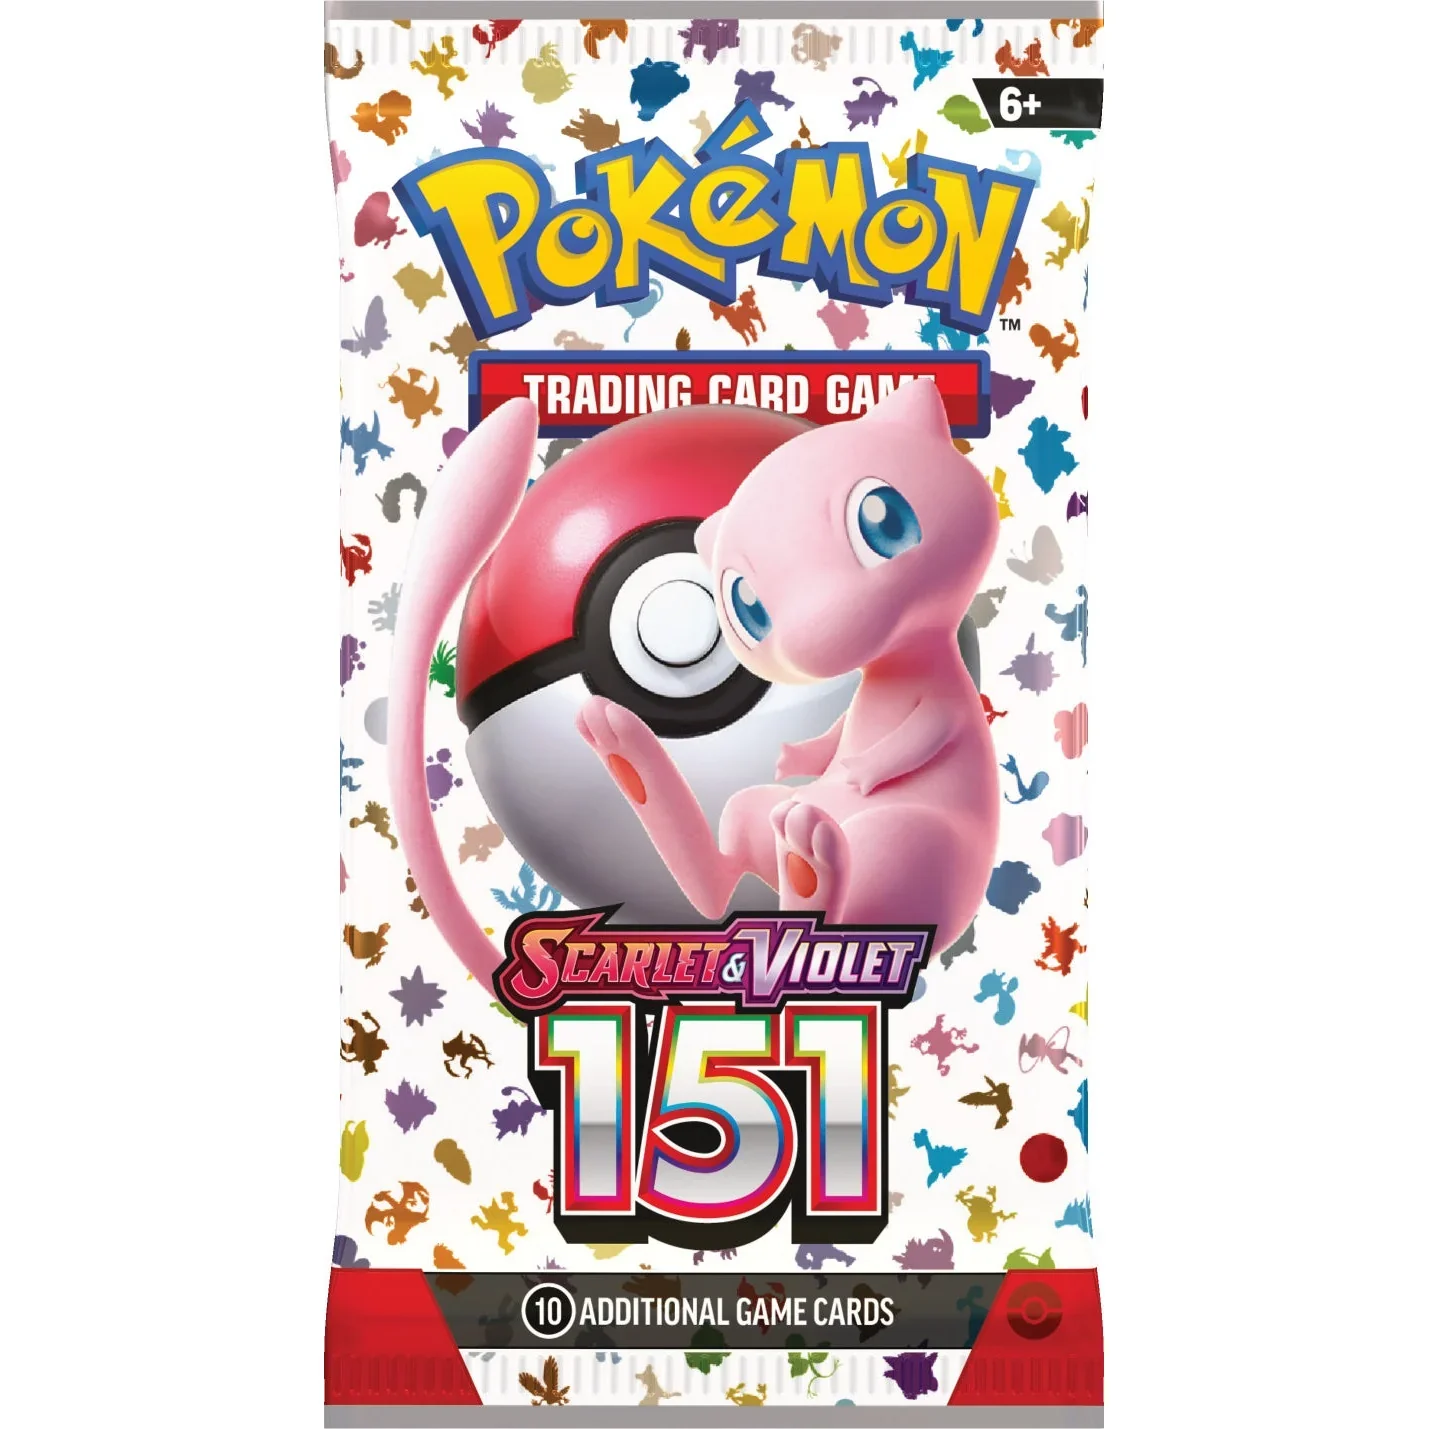 Pokémon TCG: Scarlet & Violet 151 Booster Pack